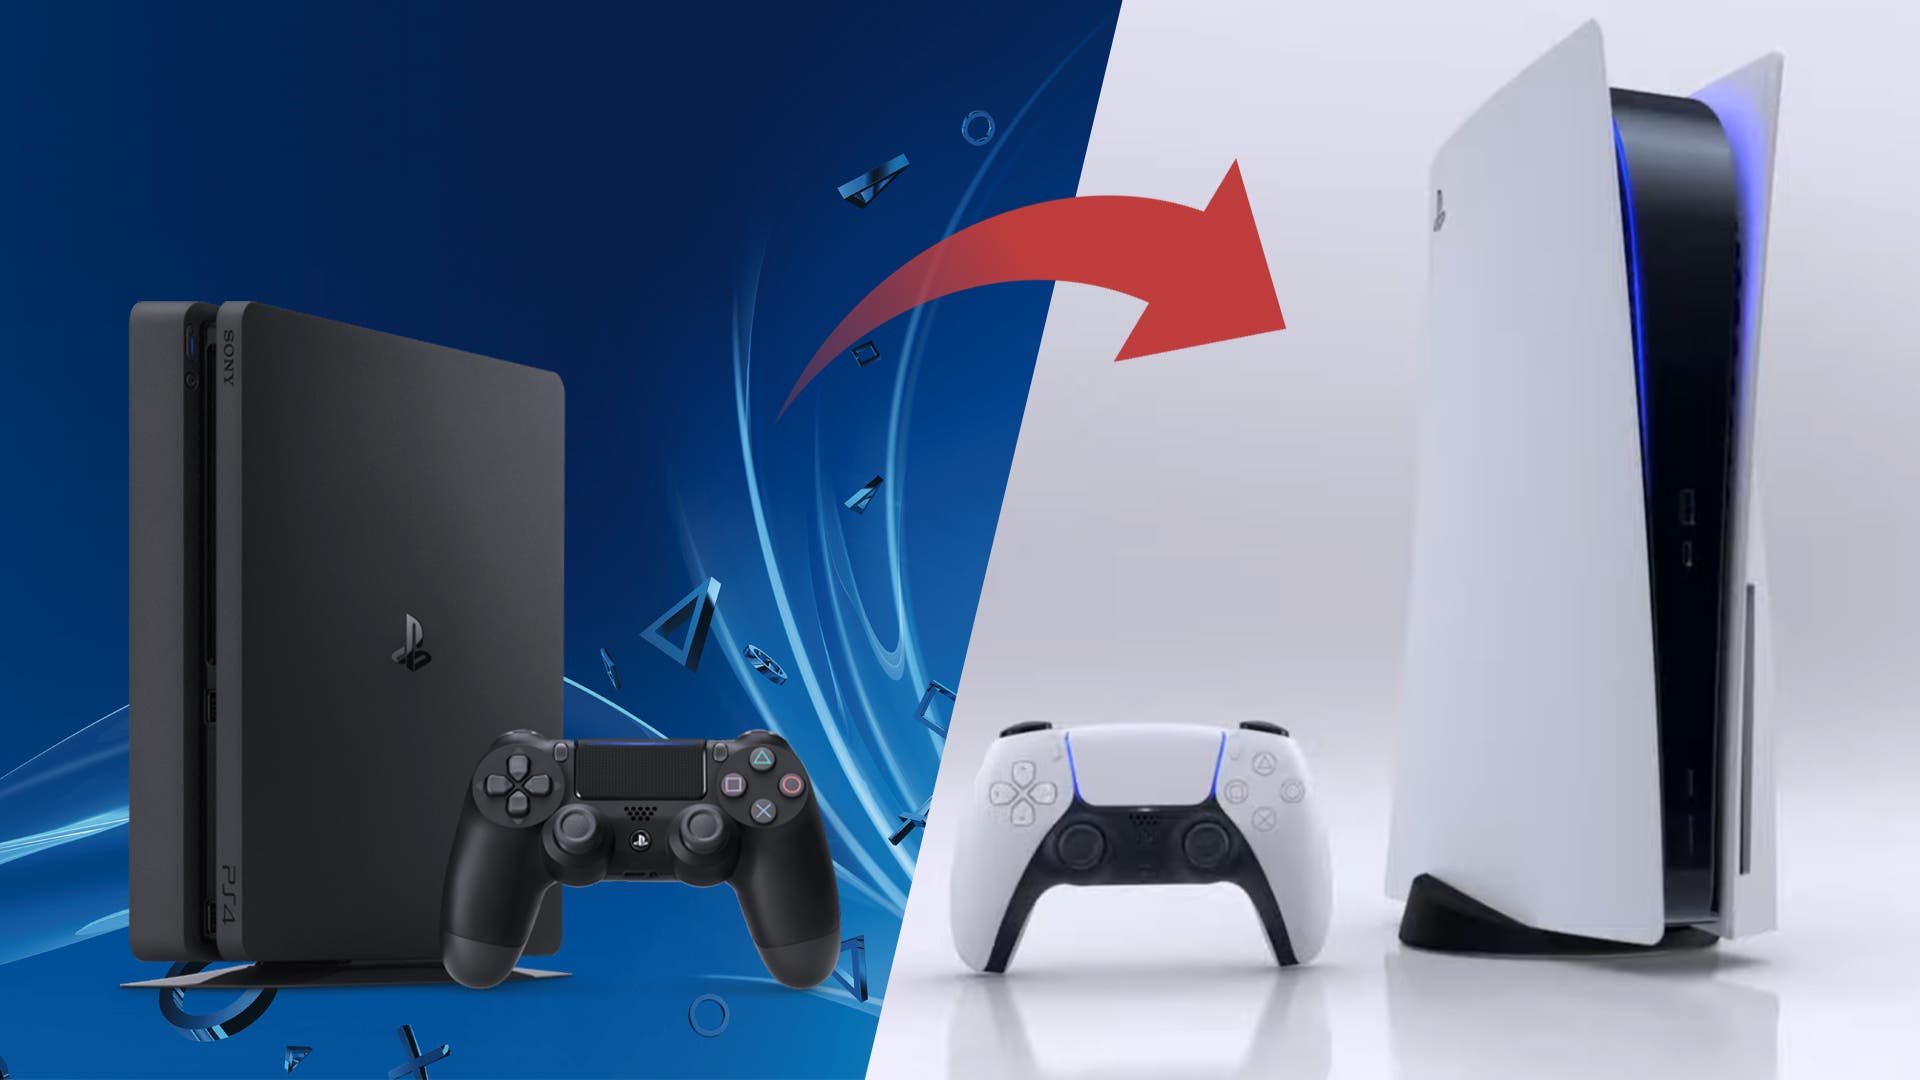 Sony reduce la cantidad de juegos que saldrán en PS4 y se concentra en PS5